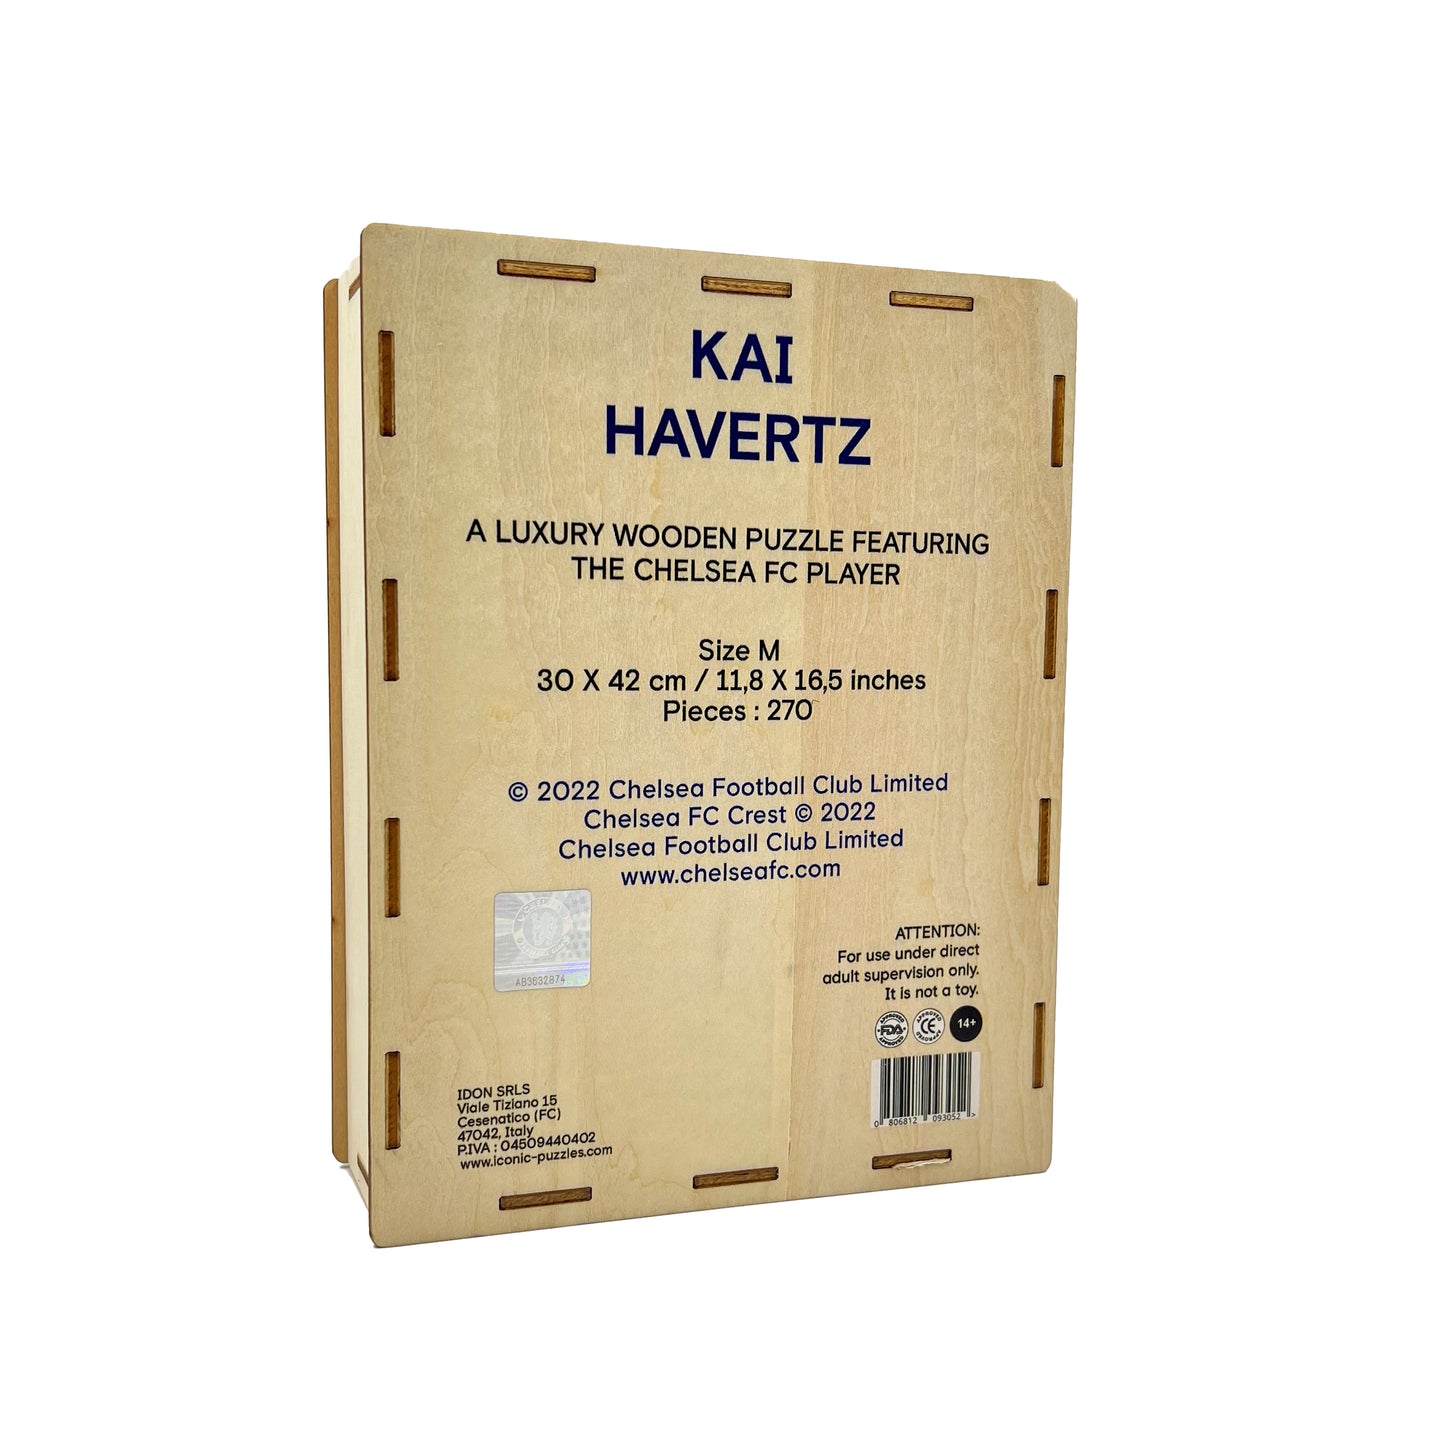 Kai Havertz - Wooden Puzzle